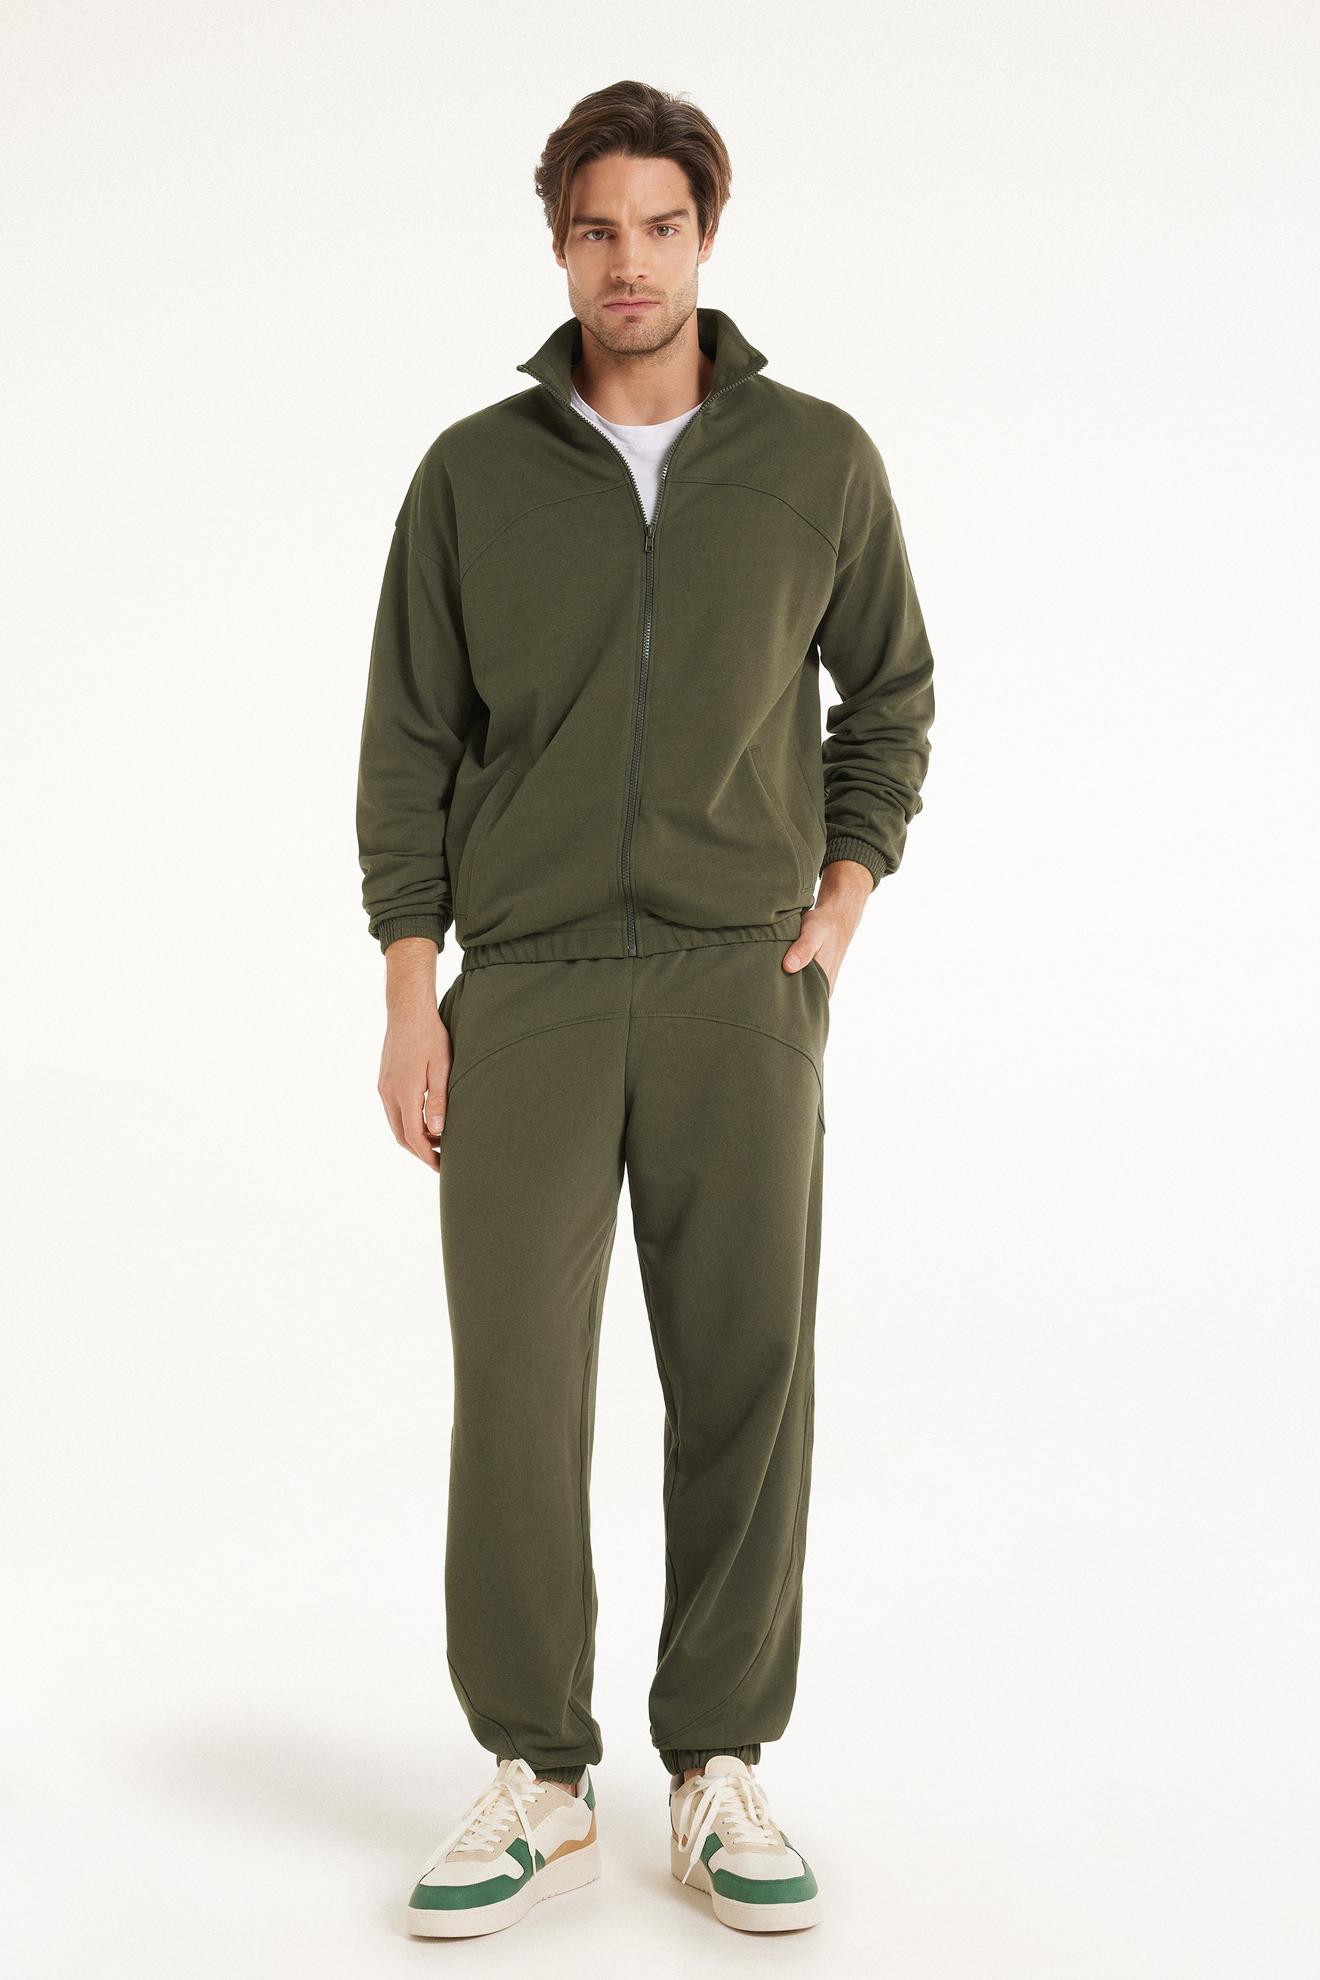 Basic-Sweatshirt mit langen Ärmeln, Reißverschluss und Taschen für 29,95 CHF in Tezenis